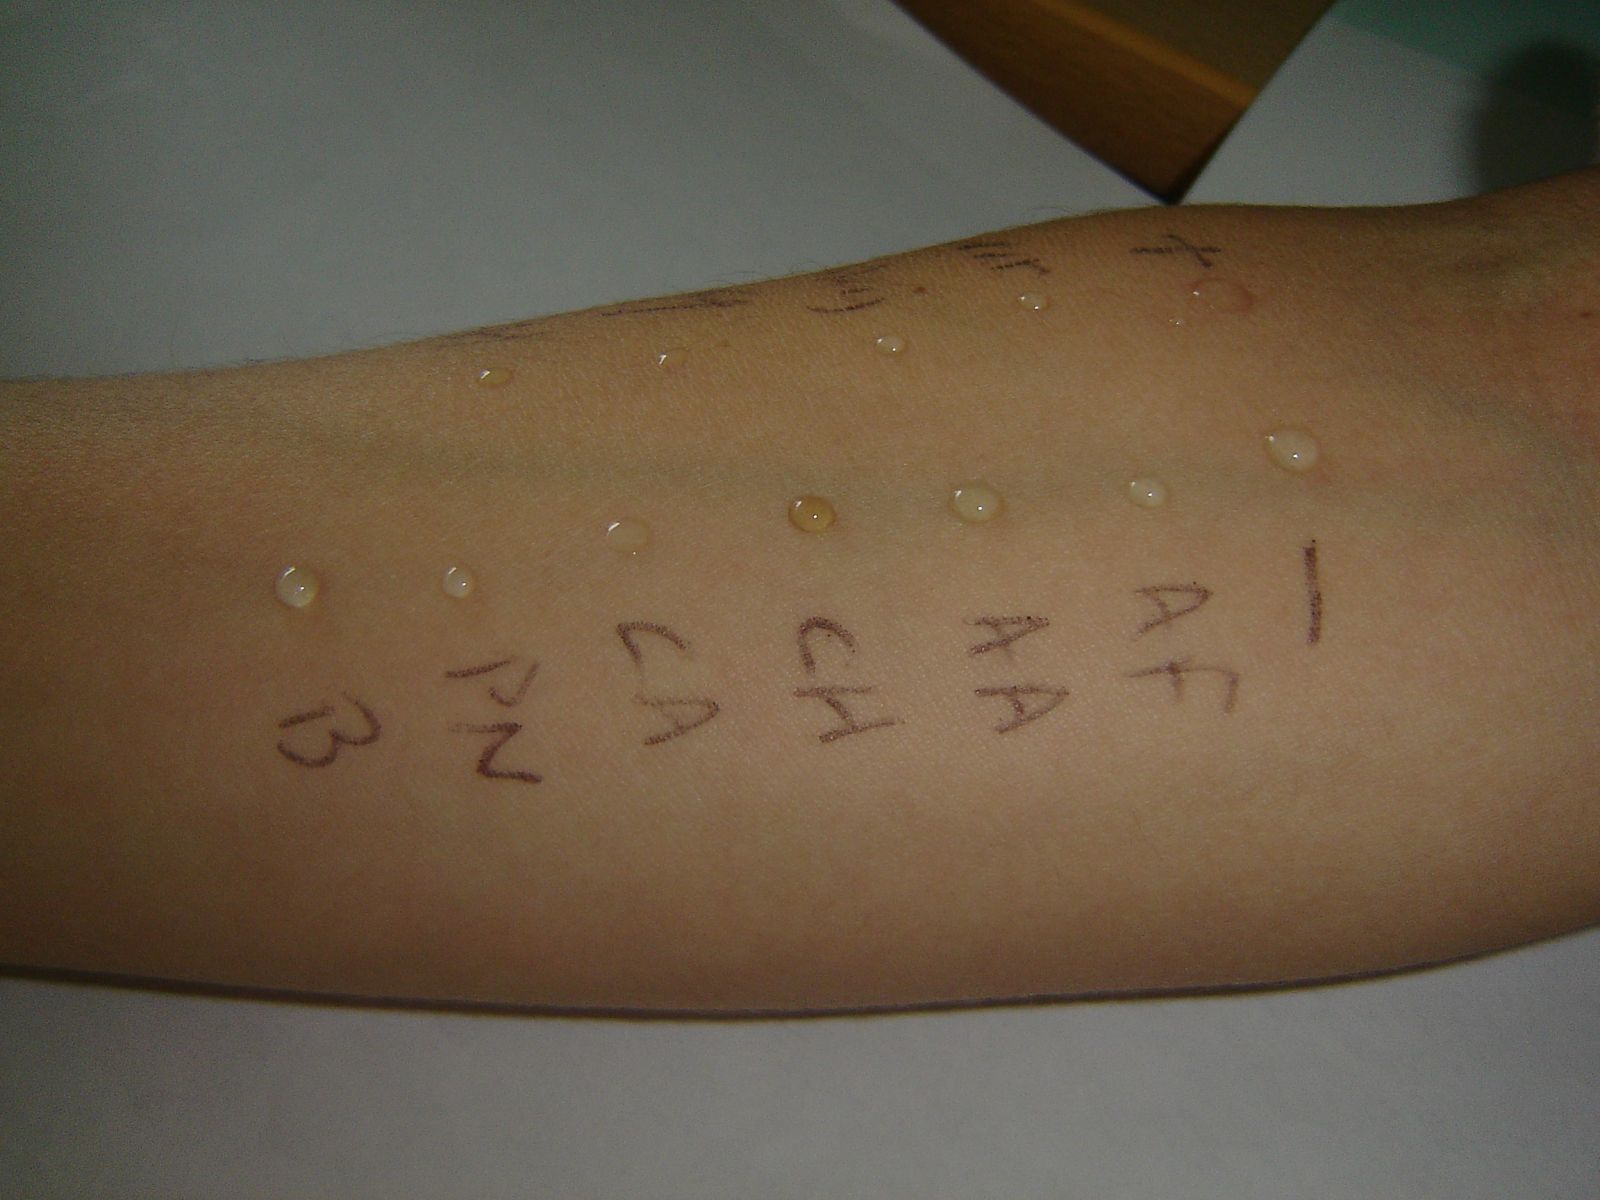 Skin testing for fungal allergy Aspergillus and Aspergillosis